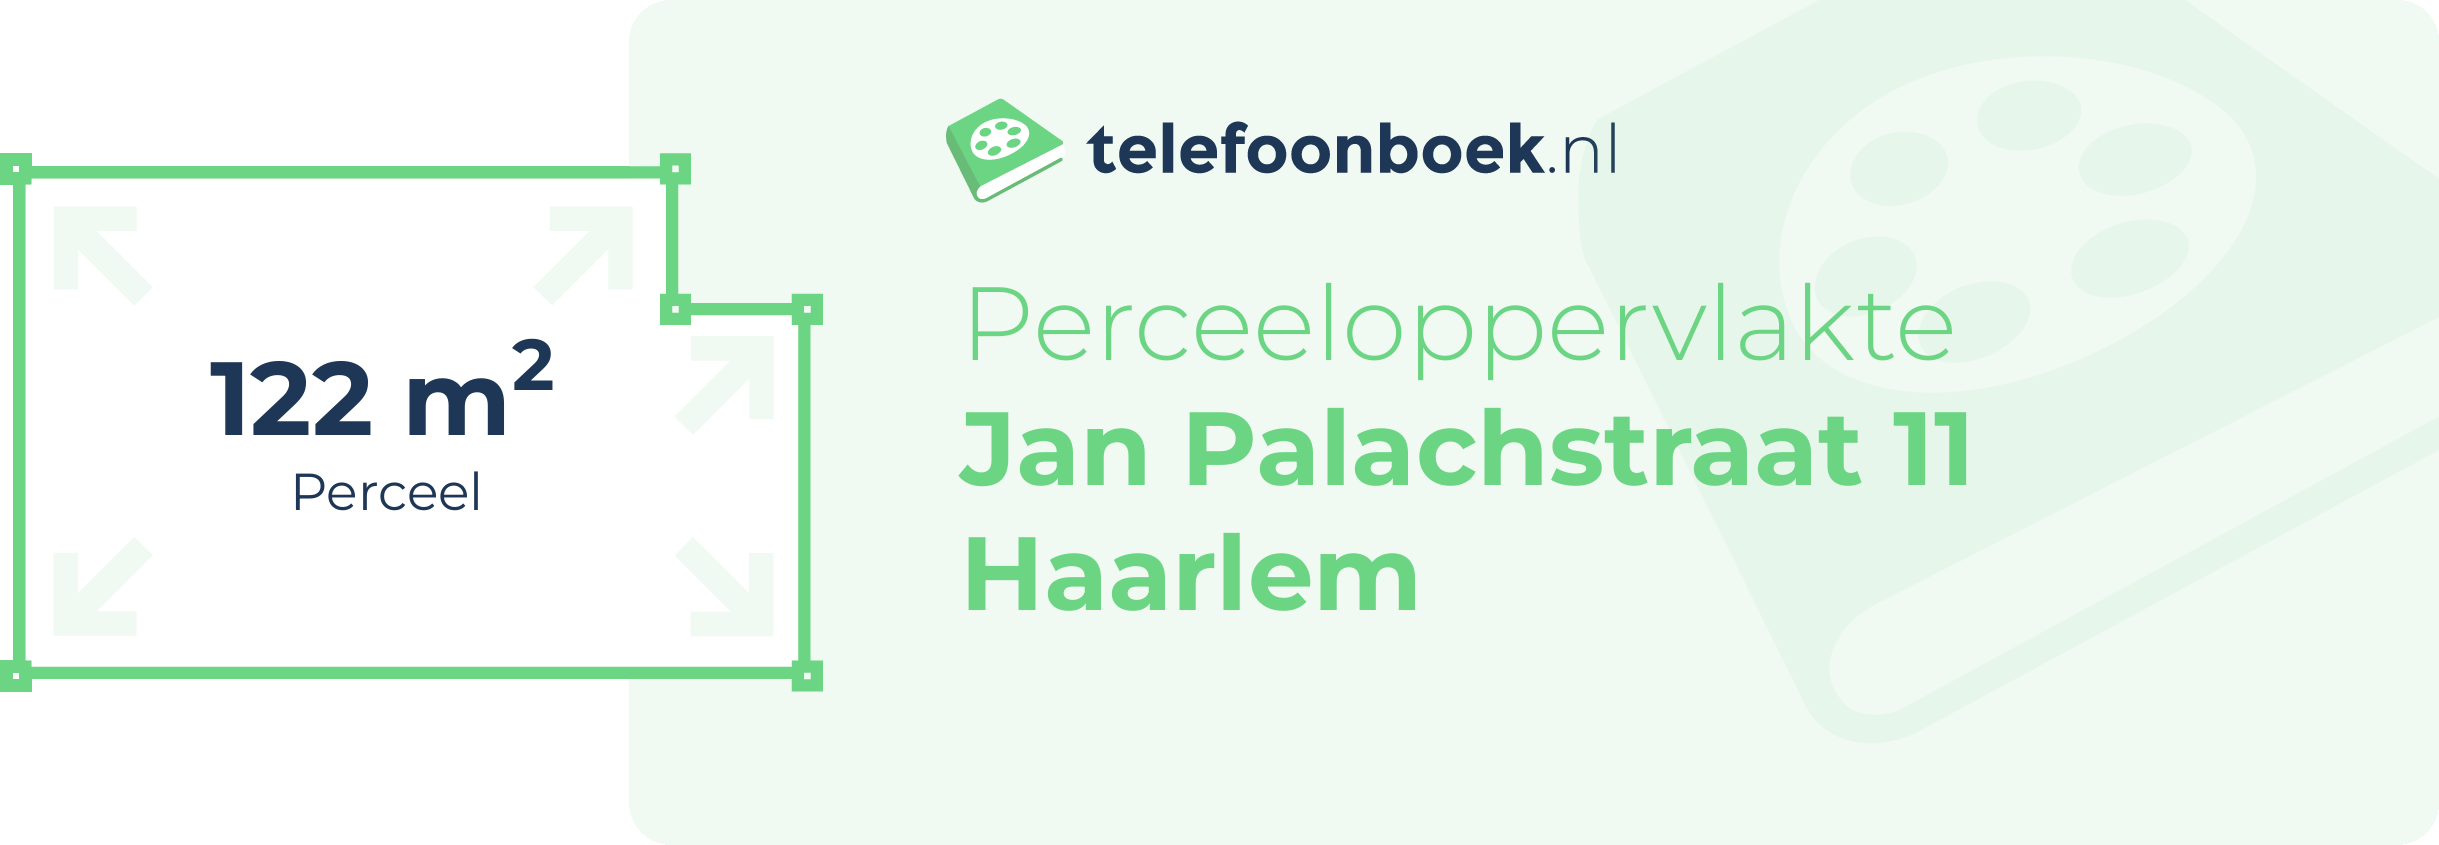 Perceeloppervlakte Jan Palachstraat 11 Haarlem